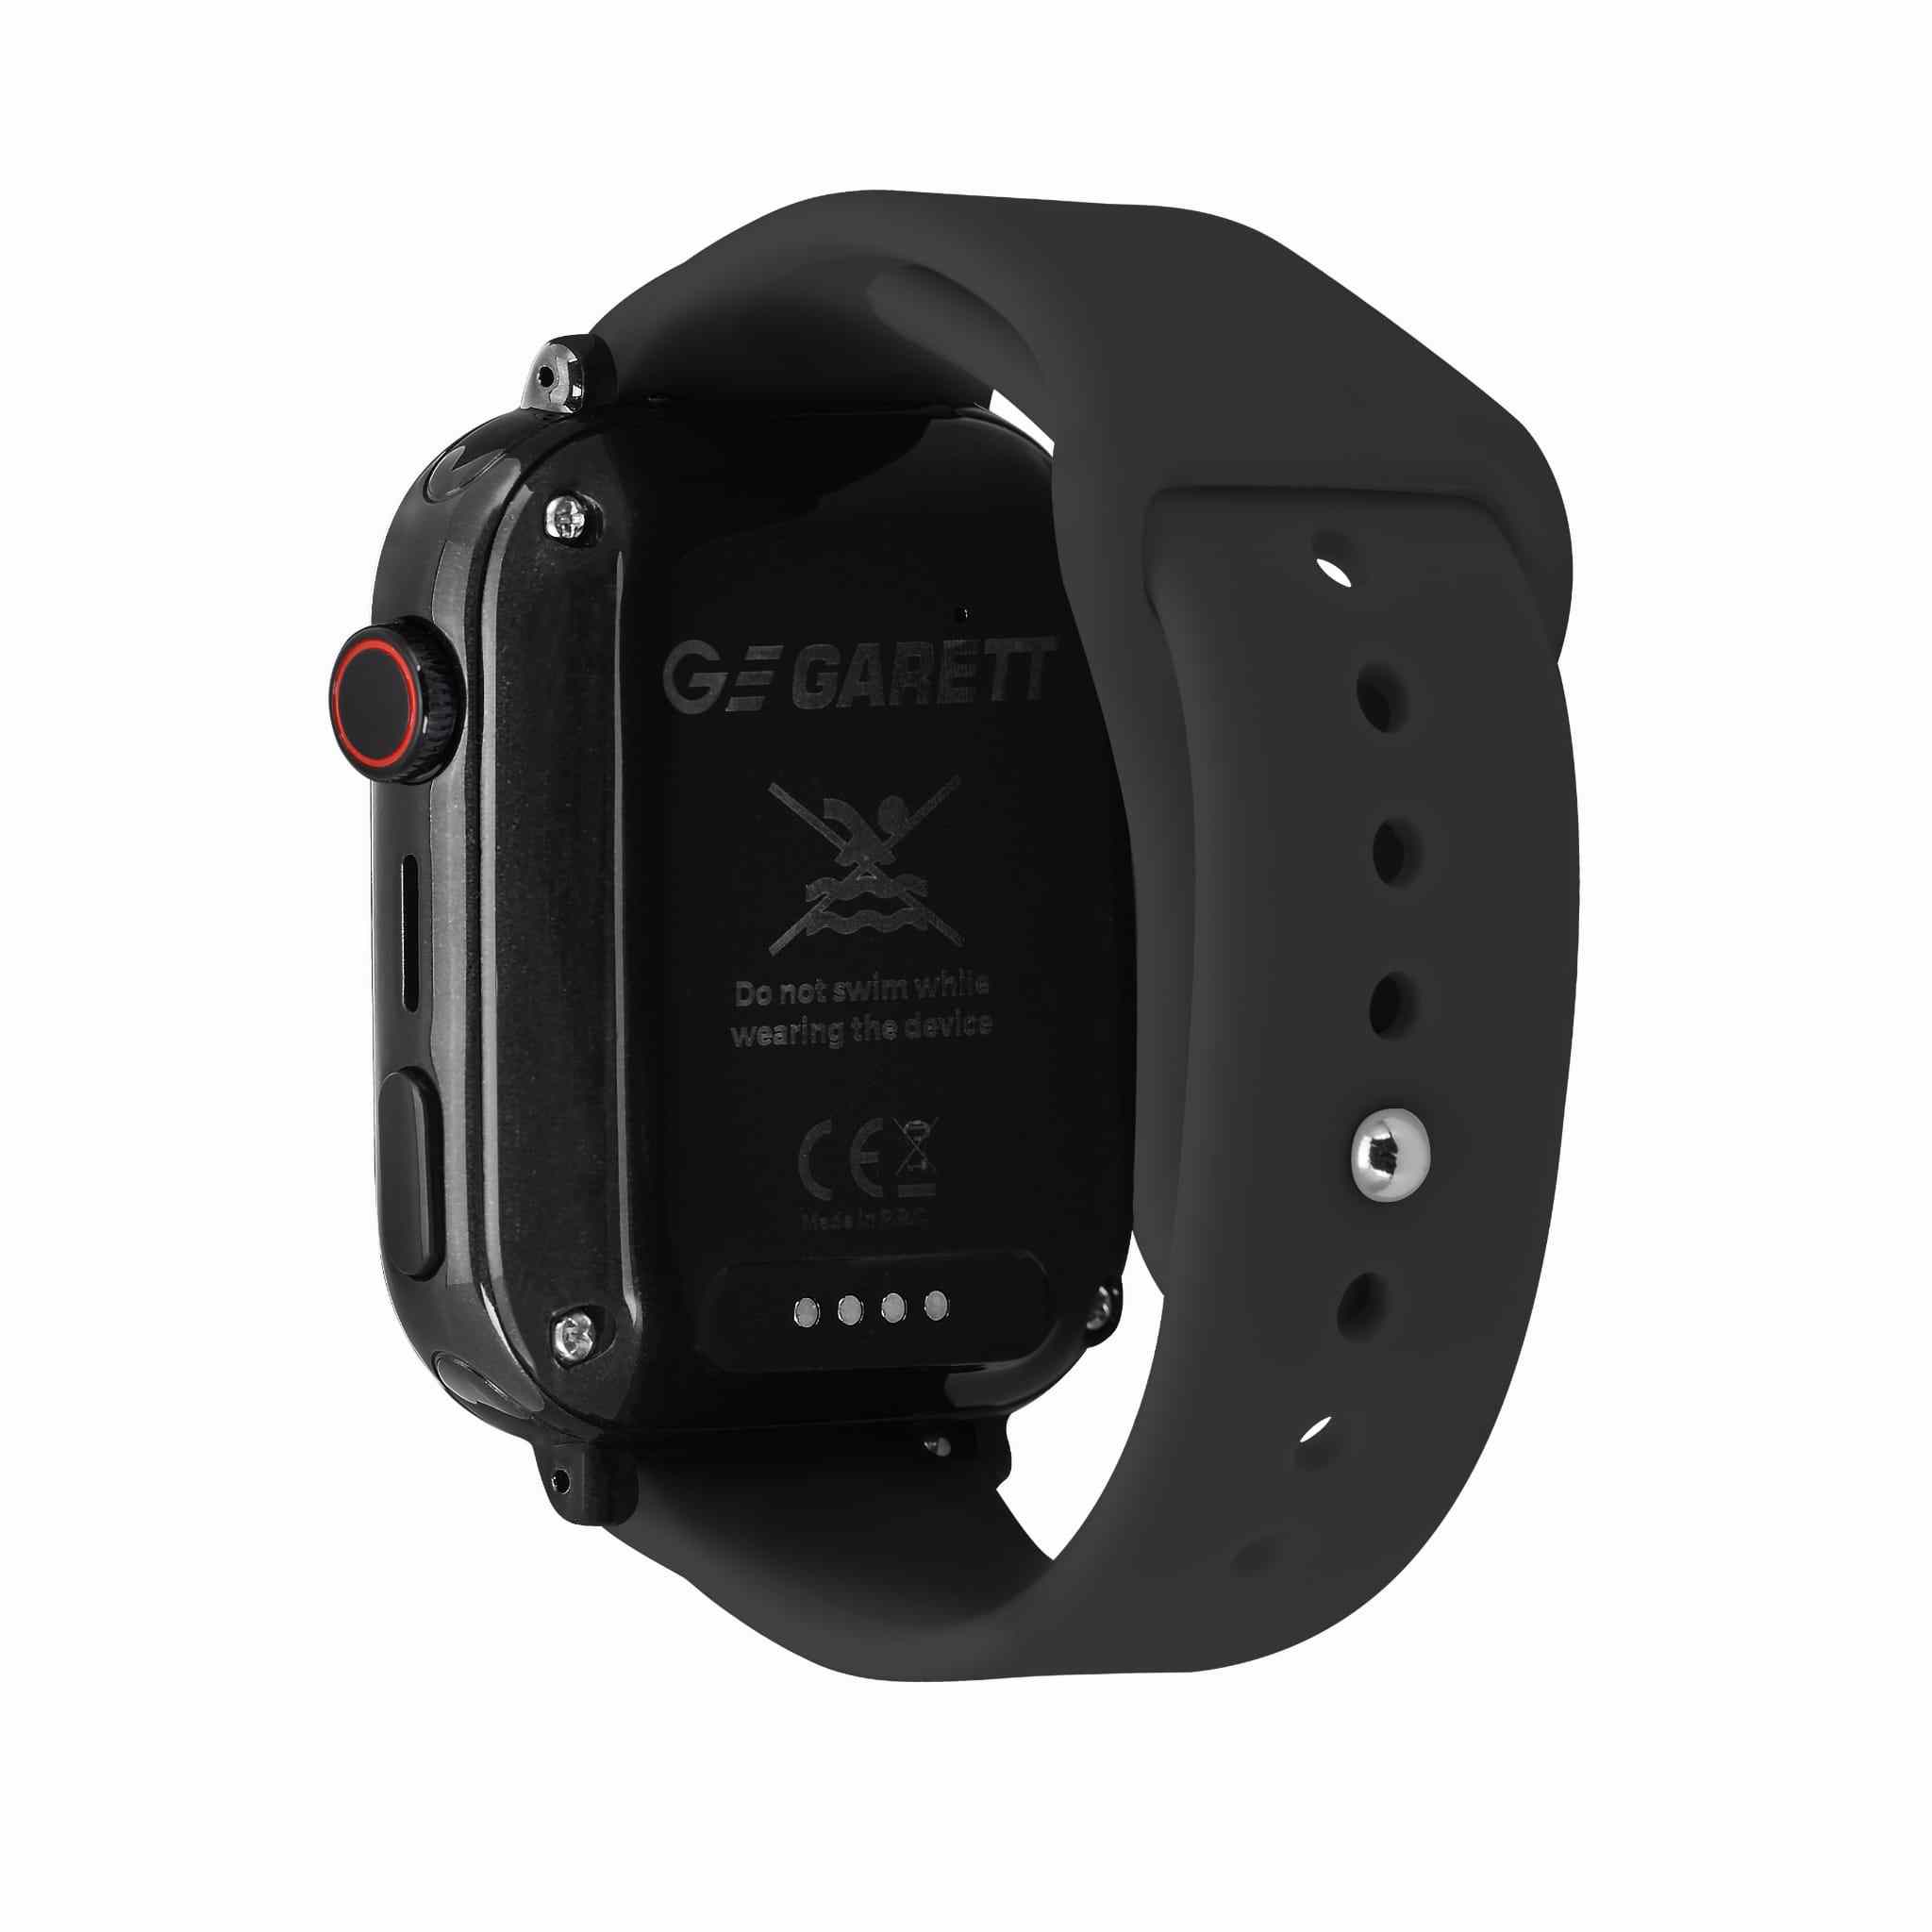 Garett Smartwatch Kids N!ce Pro 4G Black5 